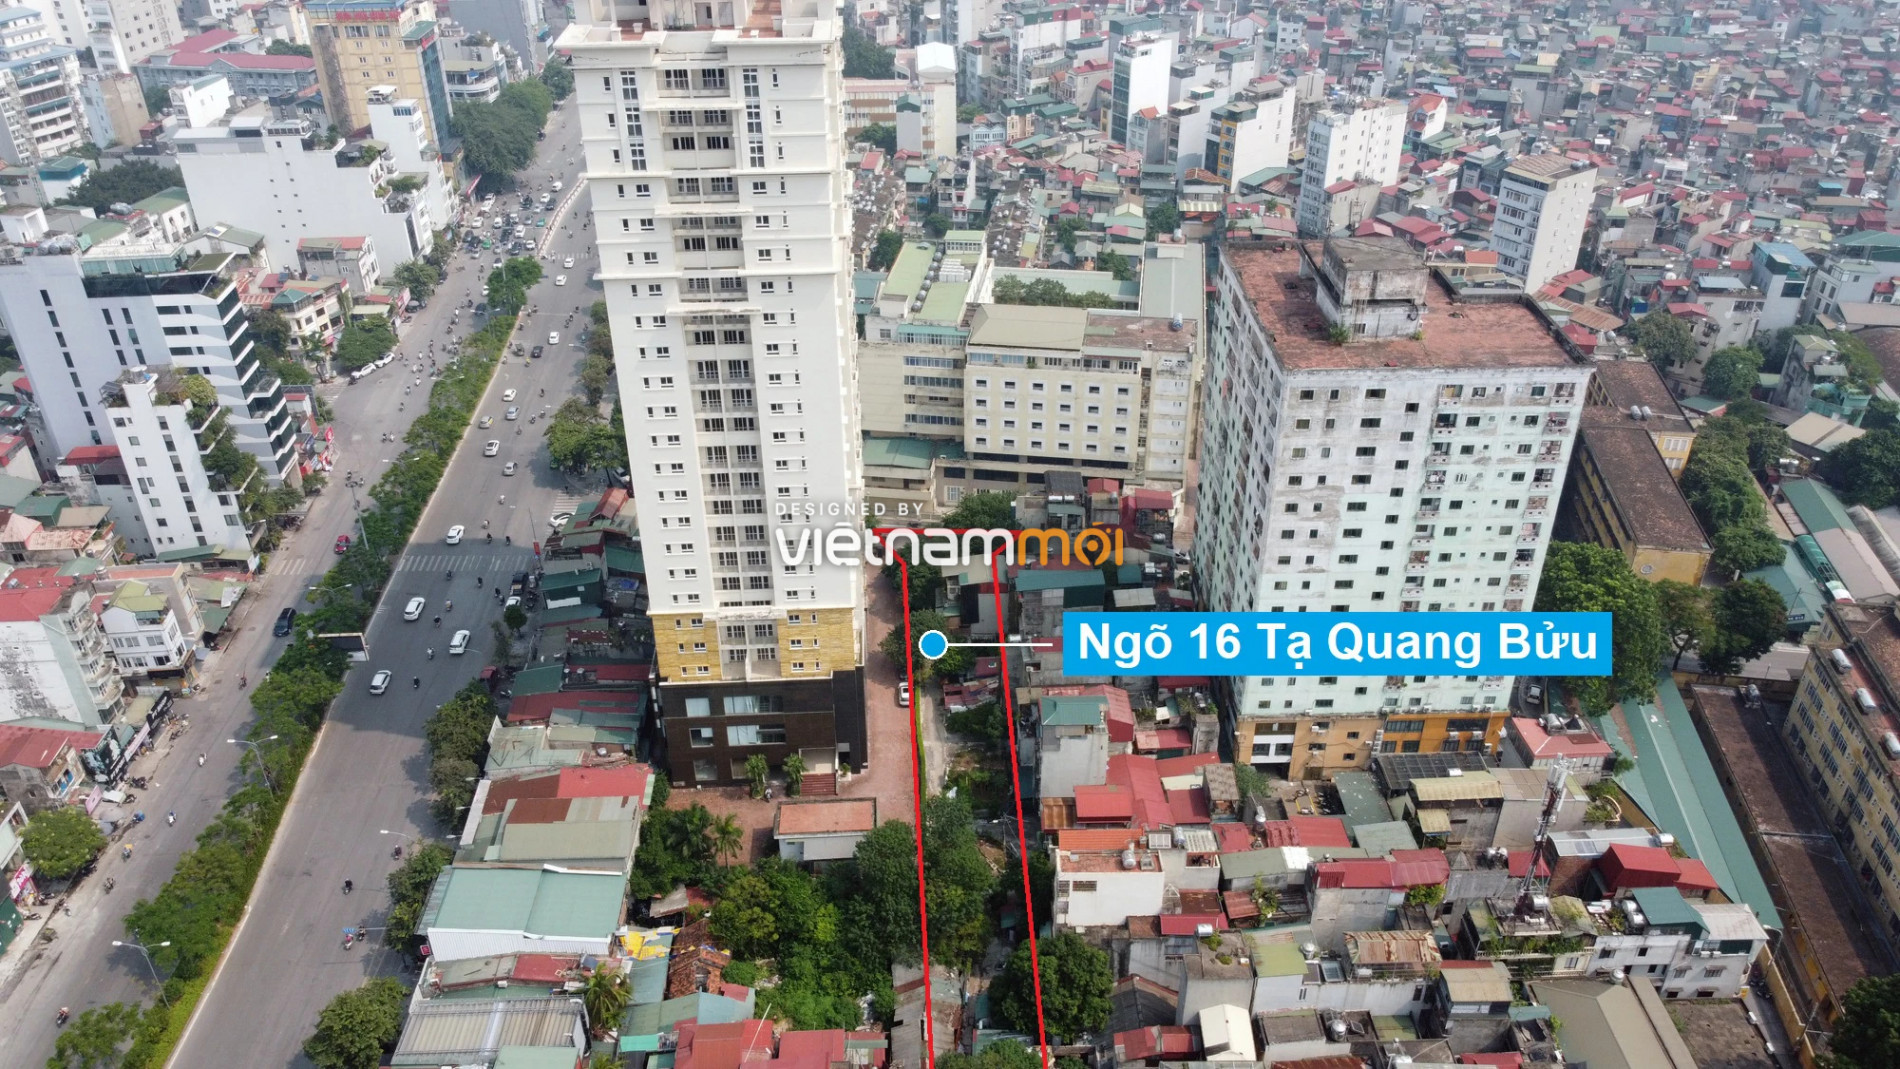  Những khu đất sắp thu hồi để mở đường ở quận Hai Bà Trưng, Hà Nội (phần 2) - Ảnh 3.